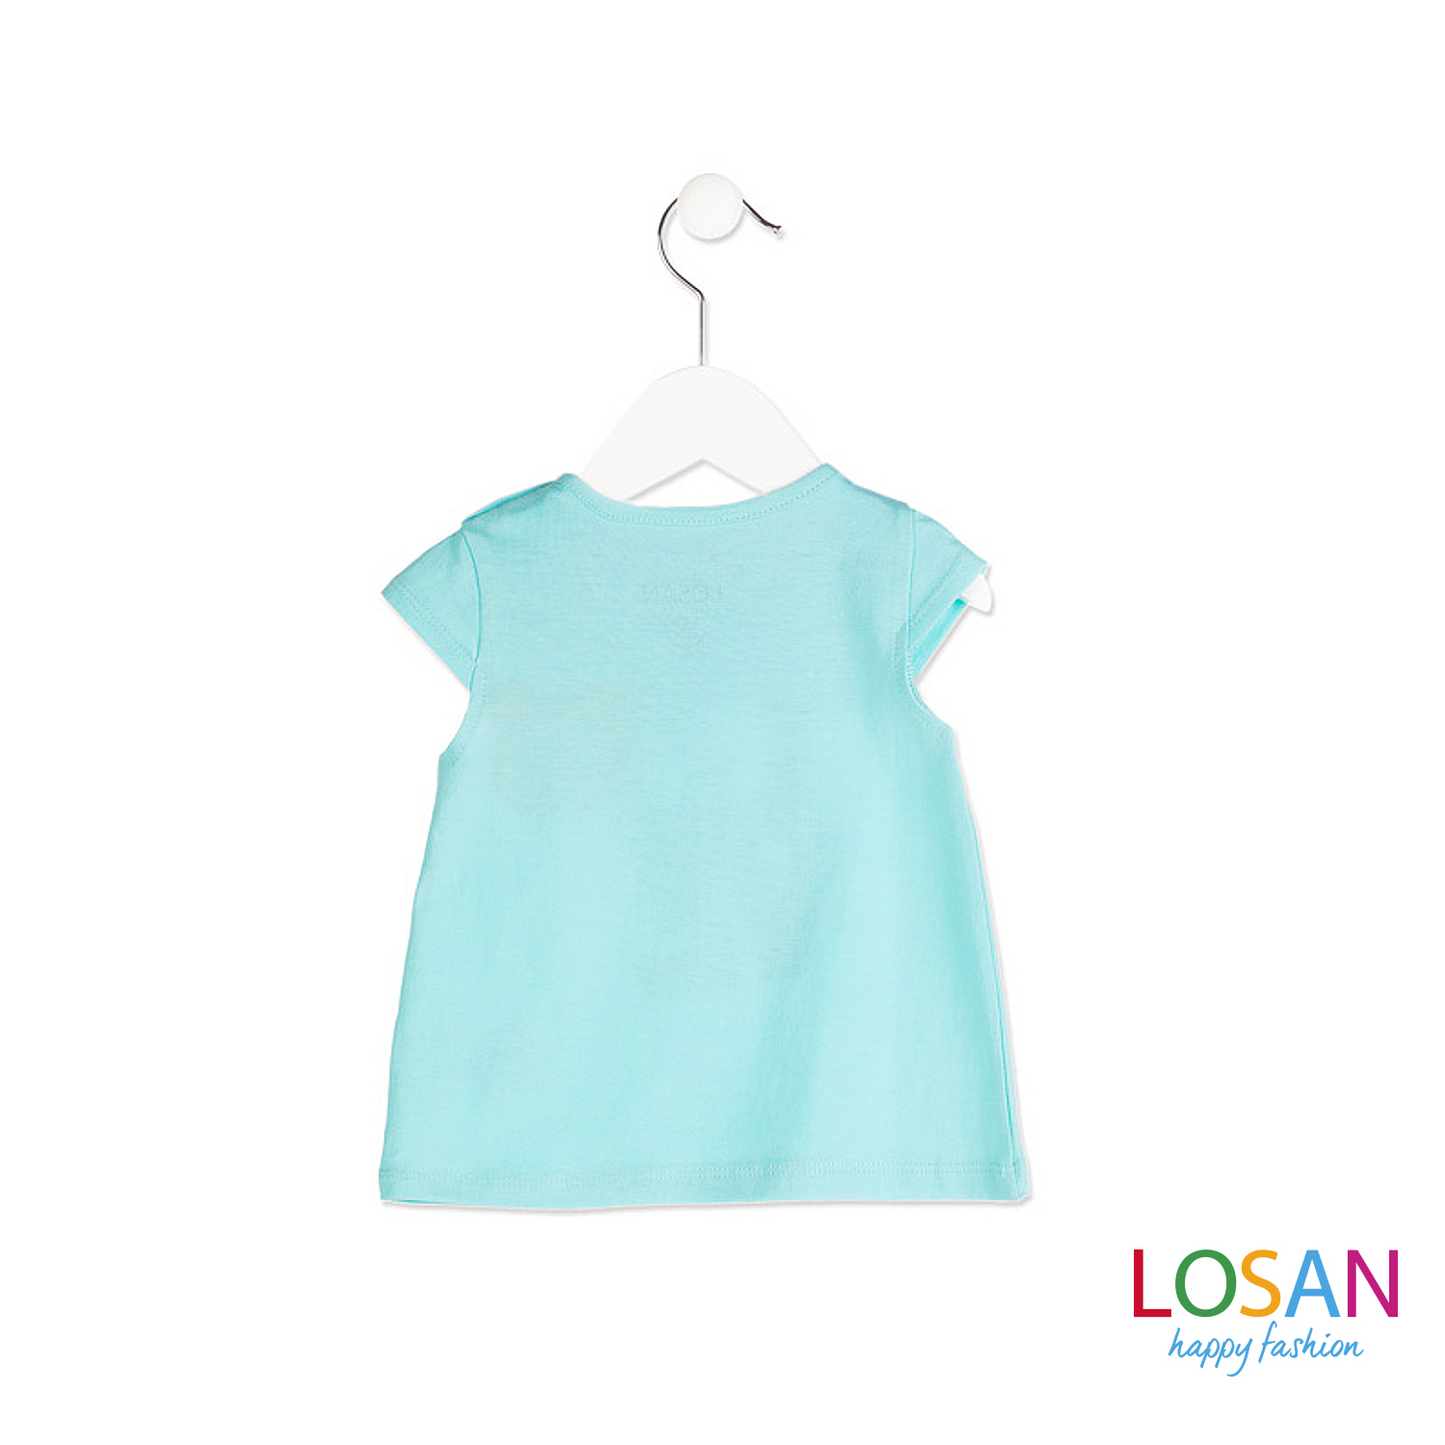 Losan - T-shirt Smanicata Baby Bimba Stampata Verde Acqua ULTIMA TAGLIA 3-6M